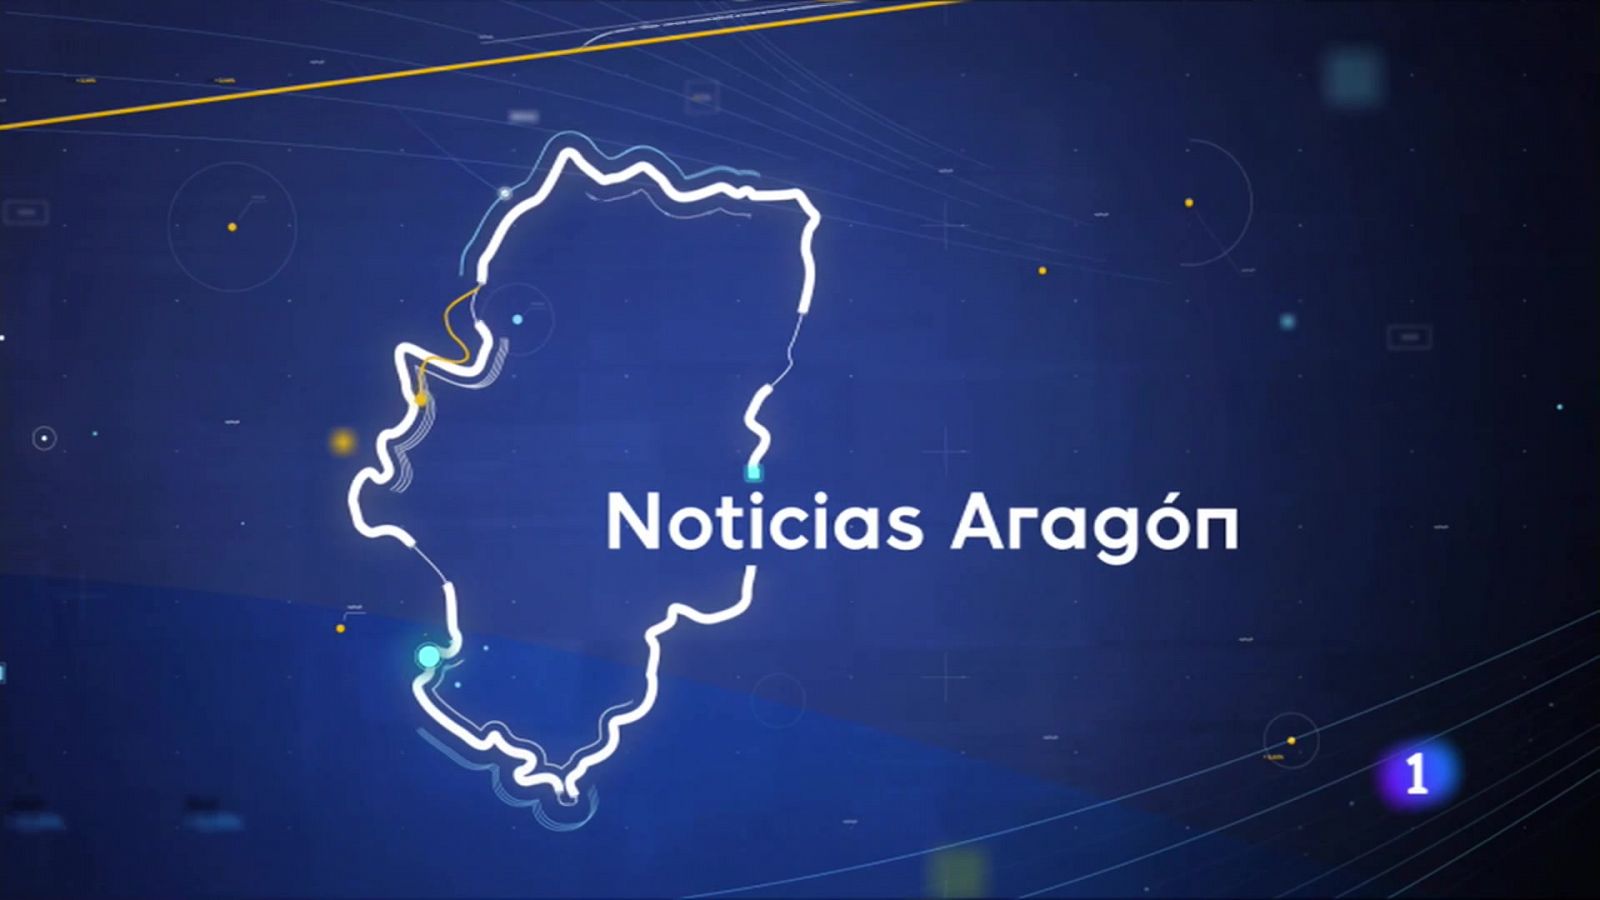 /N/ticias Aragón - dd/mm/aaaa - RTVE.es